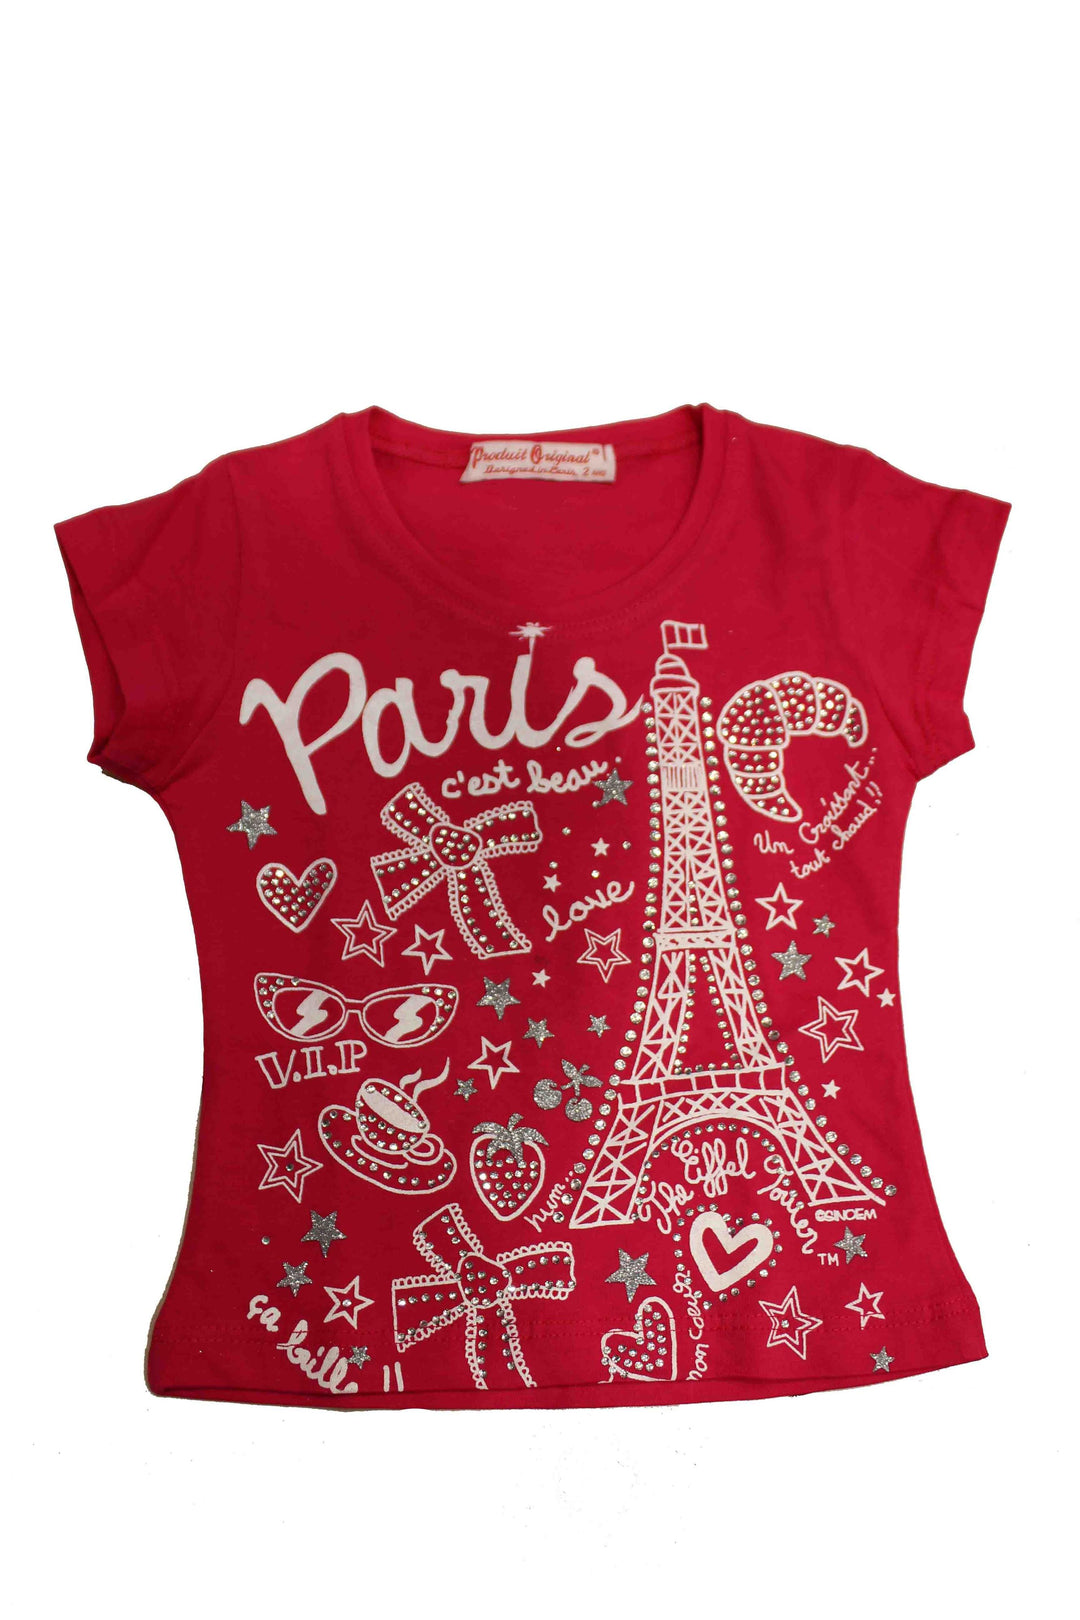 Paris pour de Souvenir – T-shirts Souvenirs PARICI Paris Enfant -